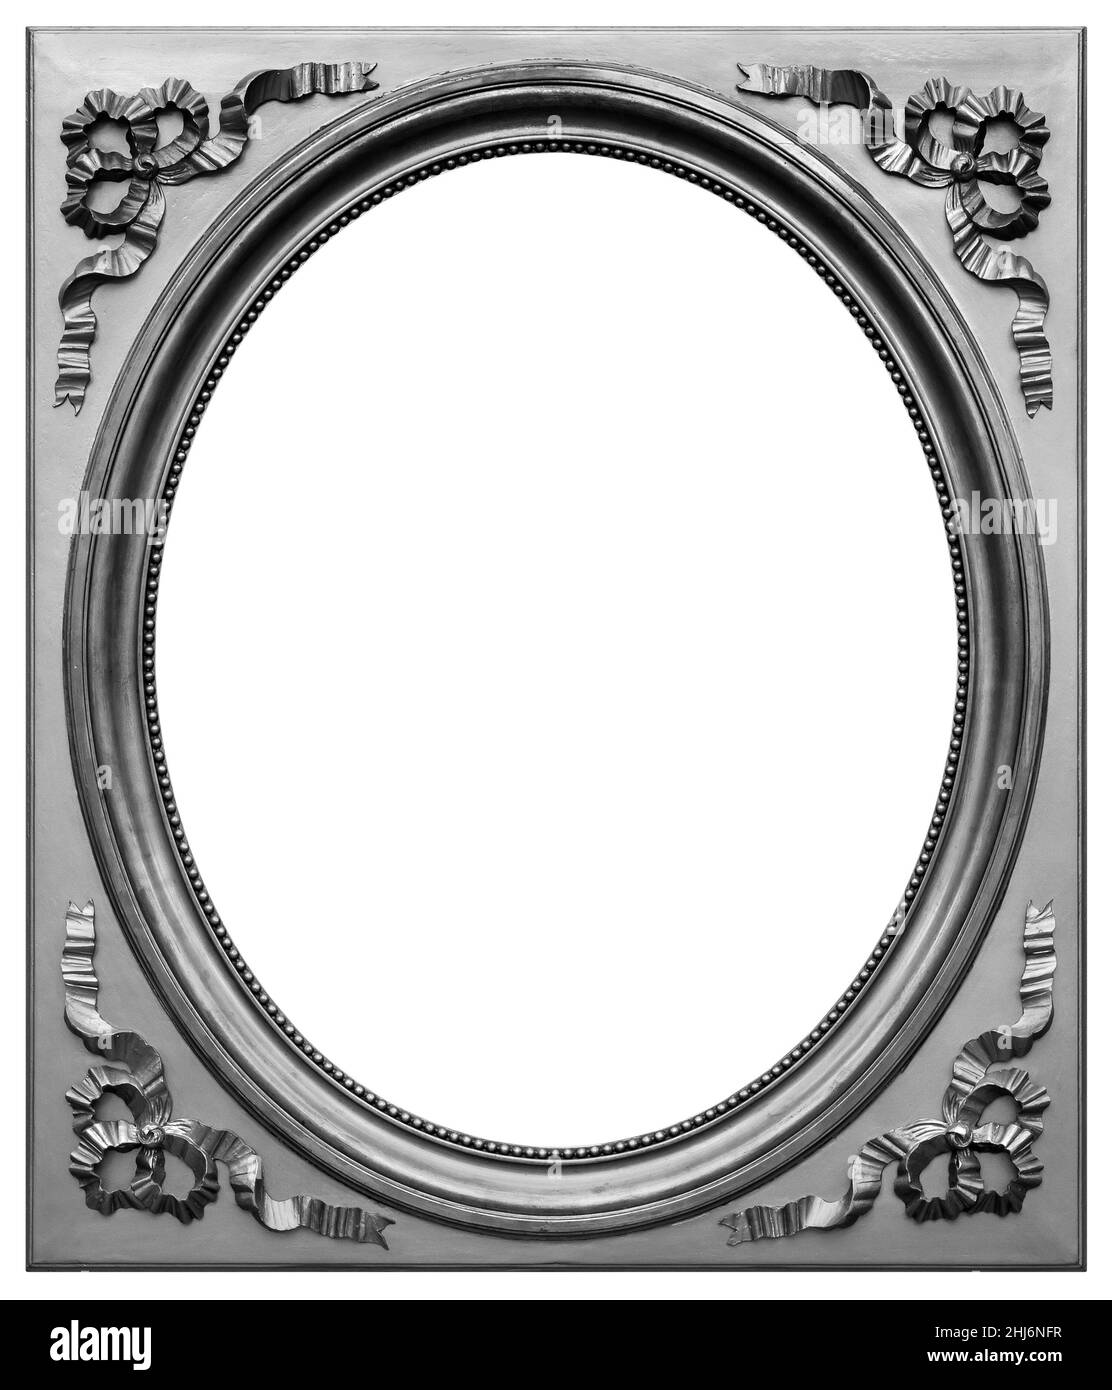 Alte hölzerne quadratische ovale Silber, versilbert Rahmen isoliert auf dem weißen Hintergrund Stockfoto